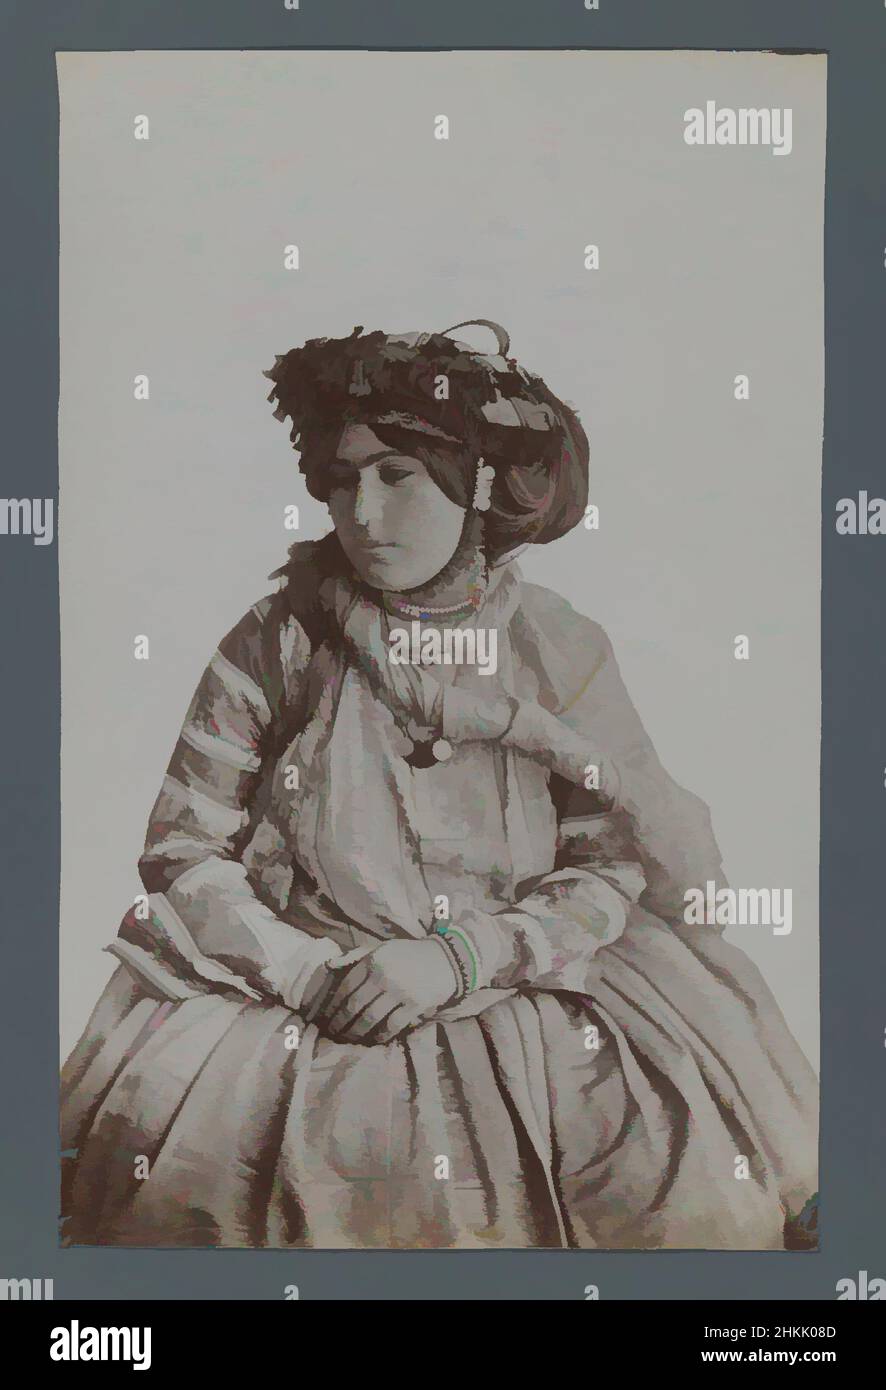 Kunst inspiriert von jungem Mädchen in Tribal-Kostüm, eine von 274 Vintage-Fotografien, Albumen-Silberfoto, Ende 19th-Anfang 20th Jahrhundert, Qajar, Qajar-Zeit, 8 1/4 x 5 1/4 Zoll, 20,9 x 13,3 cm, 19th Jahrhundert, Kostüm, Hut, historische Mode, Iran, Naher Osten, Persien, Foto, Porträt, Klassische Werke, die von Artotop mit einem Hauch von Moderne modernisiert wurden. Formen, Farbe und Wert, auffällige visuelle Wirkung auf Kunst. Emotionen durch Freiheit von Kunstwerken auf zeitgemäße Weise. Eine zeitlose Botschaft, die eine wild kreative neue Richtung verfolgt. Künstler, die sich dem digitalen Medium zuwenden und die Artotop NFT erschaffen Stockfoto